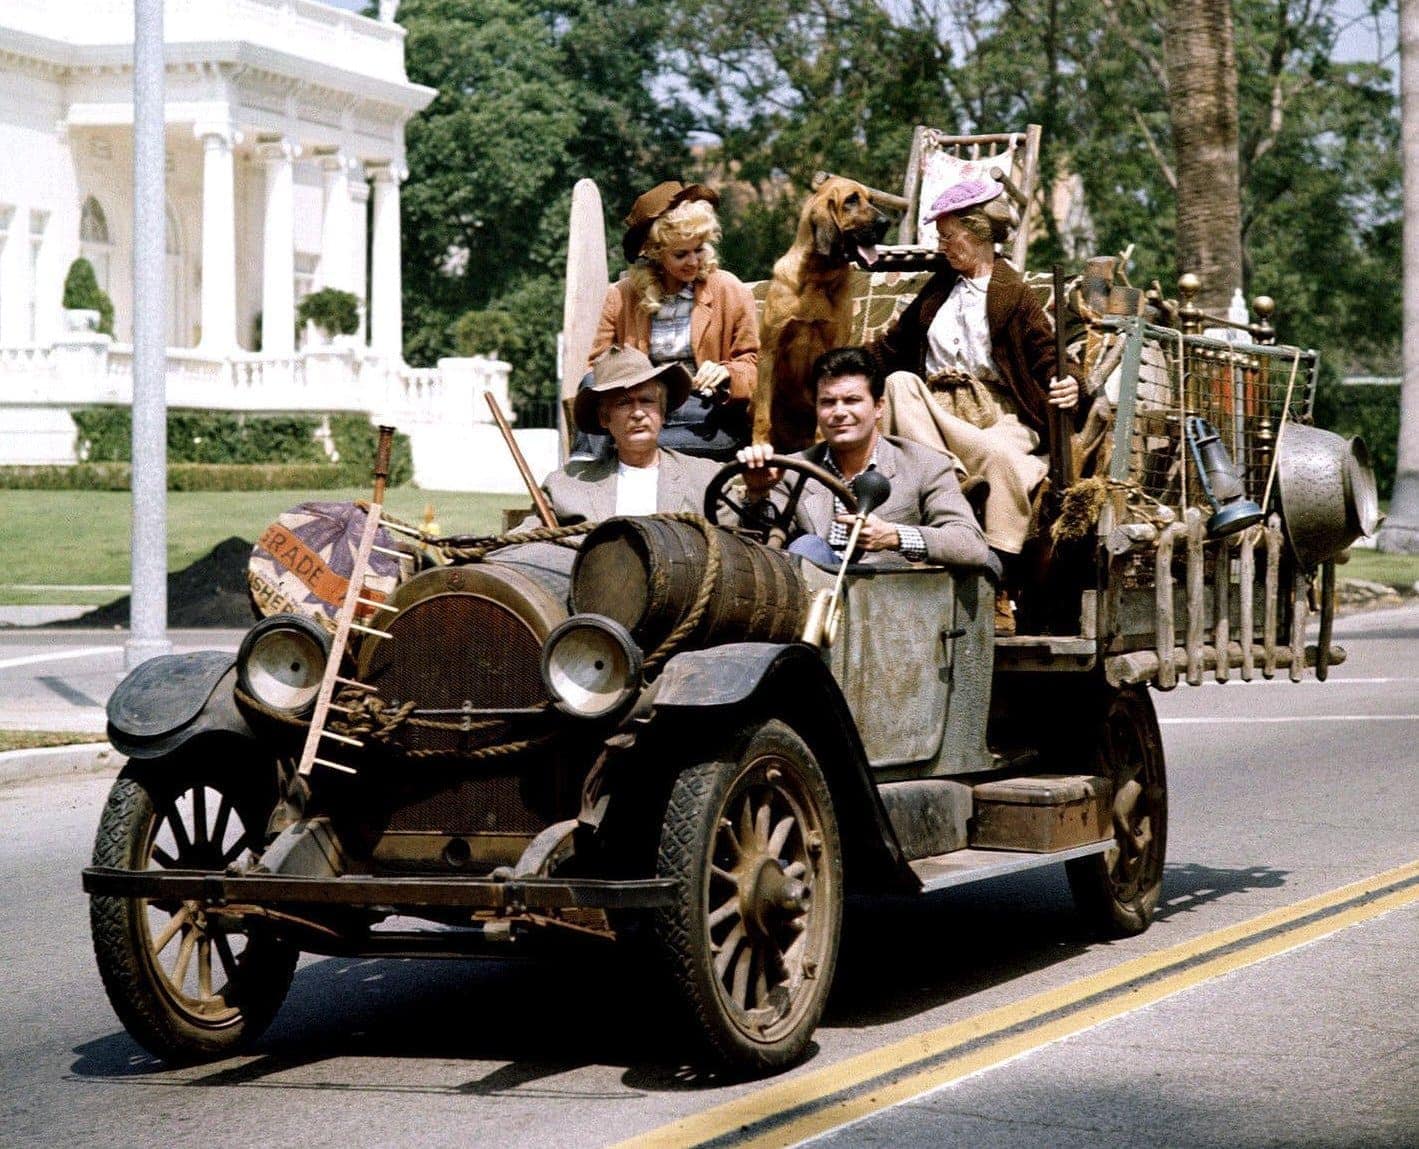 Beverly-Hillbillies-Family-in-the-car-1.jpg